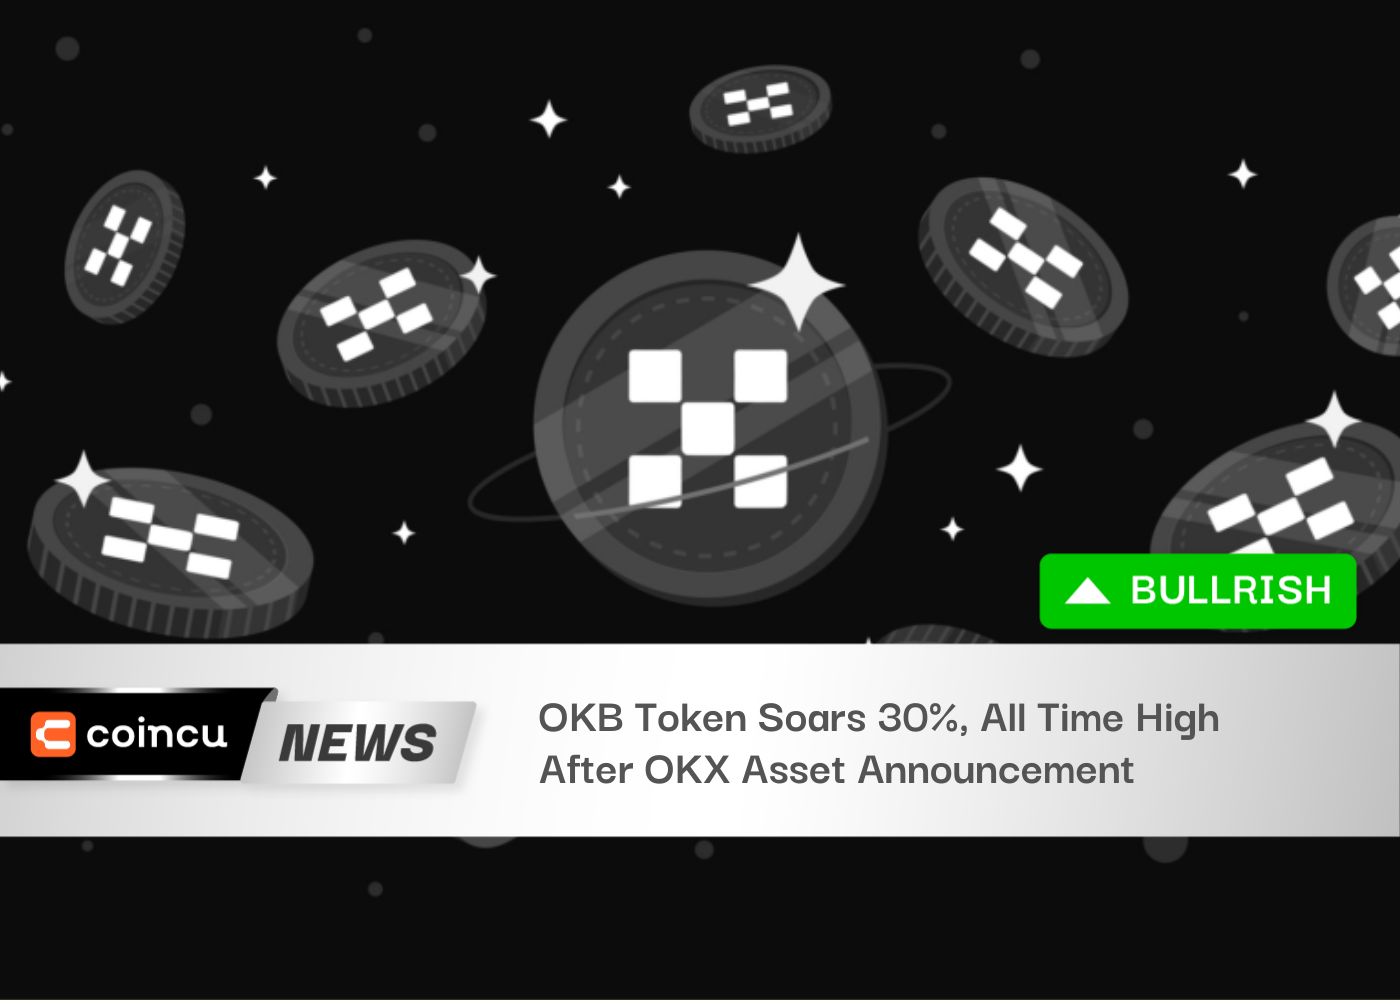 OKB Token Soars 30%, All Time High After OKX Asset Announcement